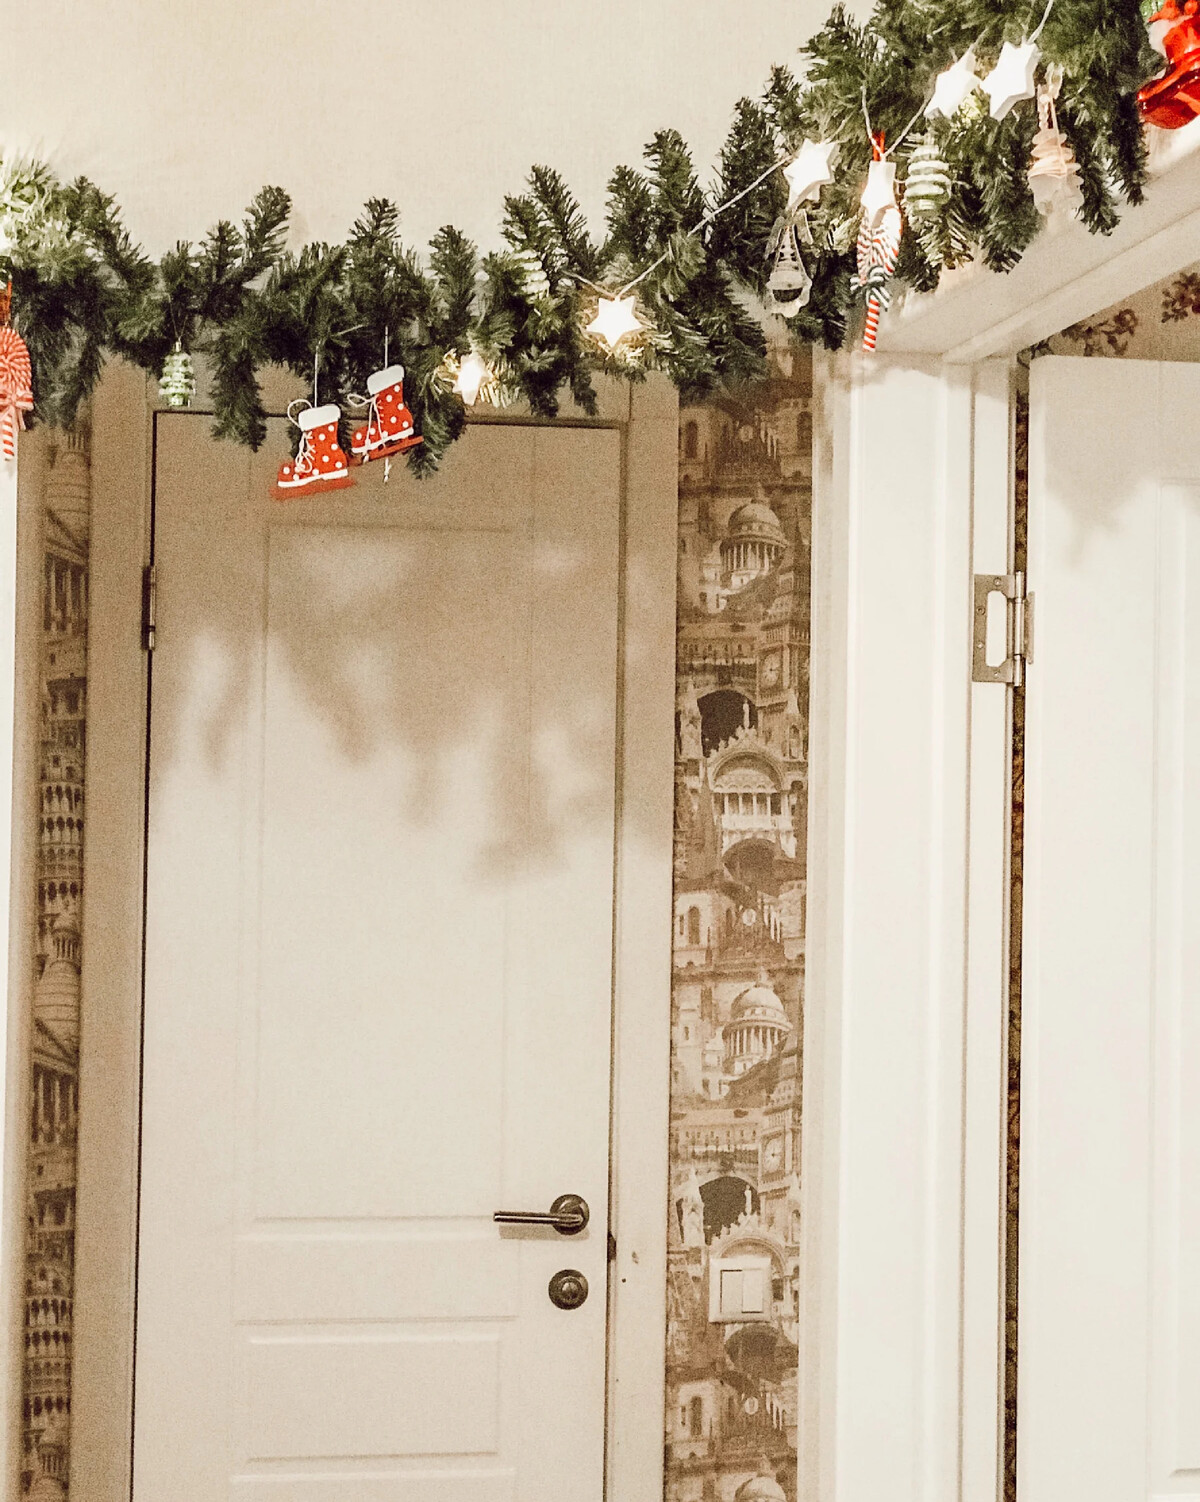 Анастасия заставила парня украсить комнату к новому году